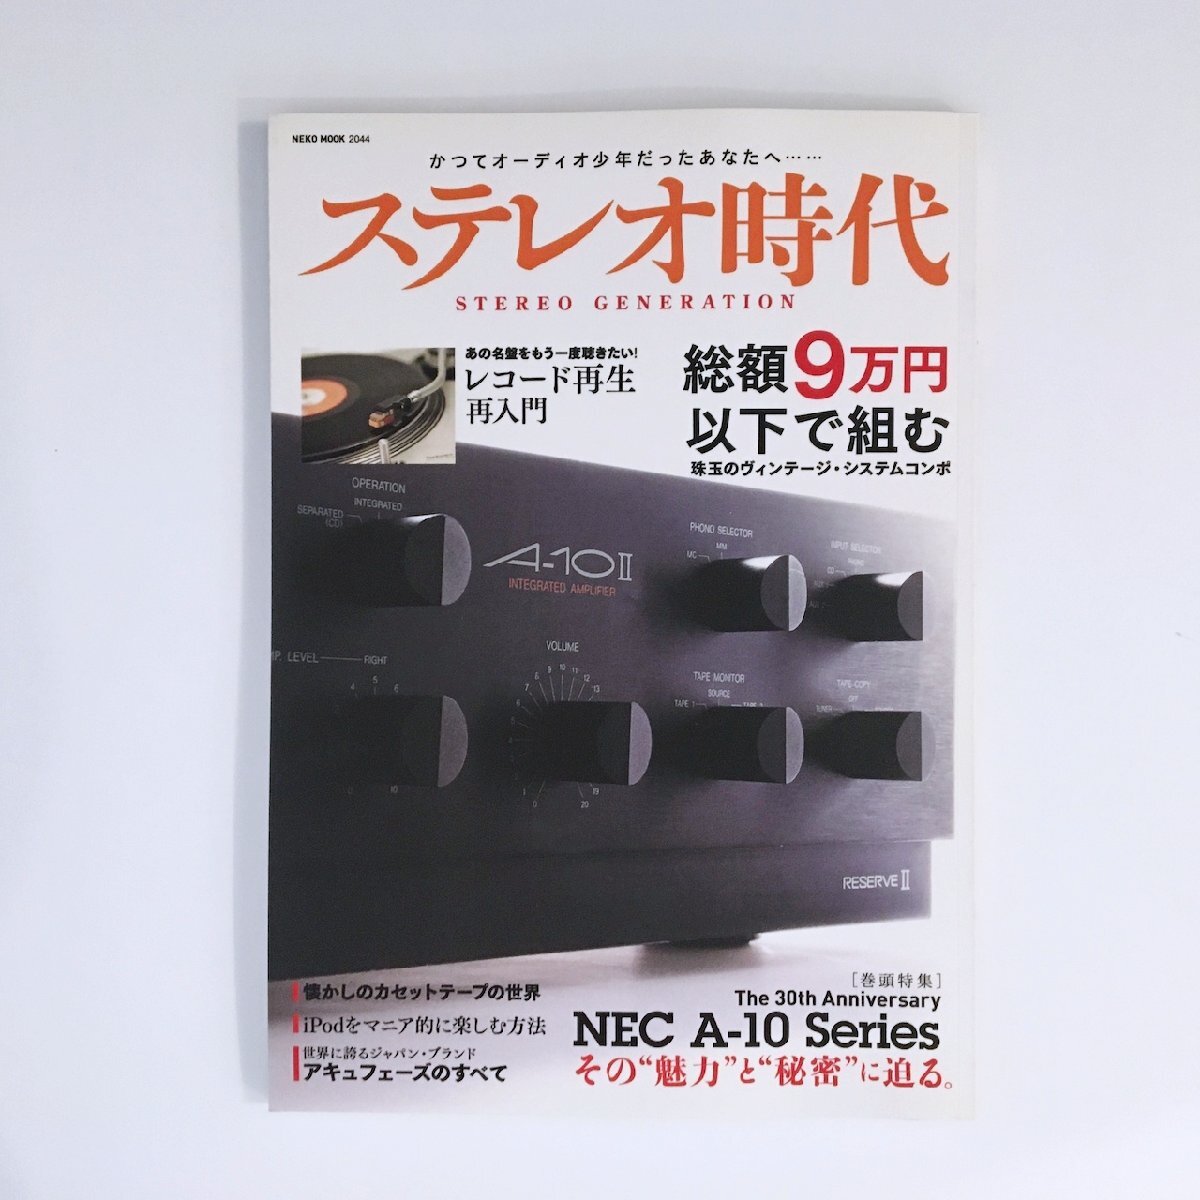 ステレオ時代 VOL.1 / その”魅力”と”秘密”に迫る / NEC A-10 Series / NEKO MOOK